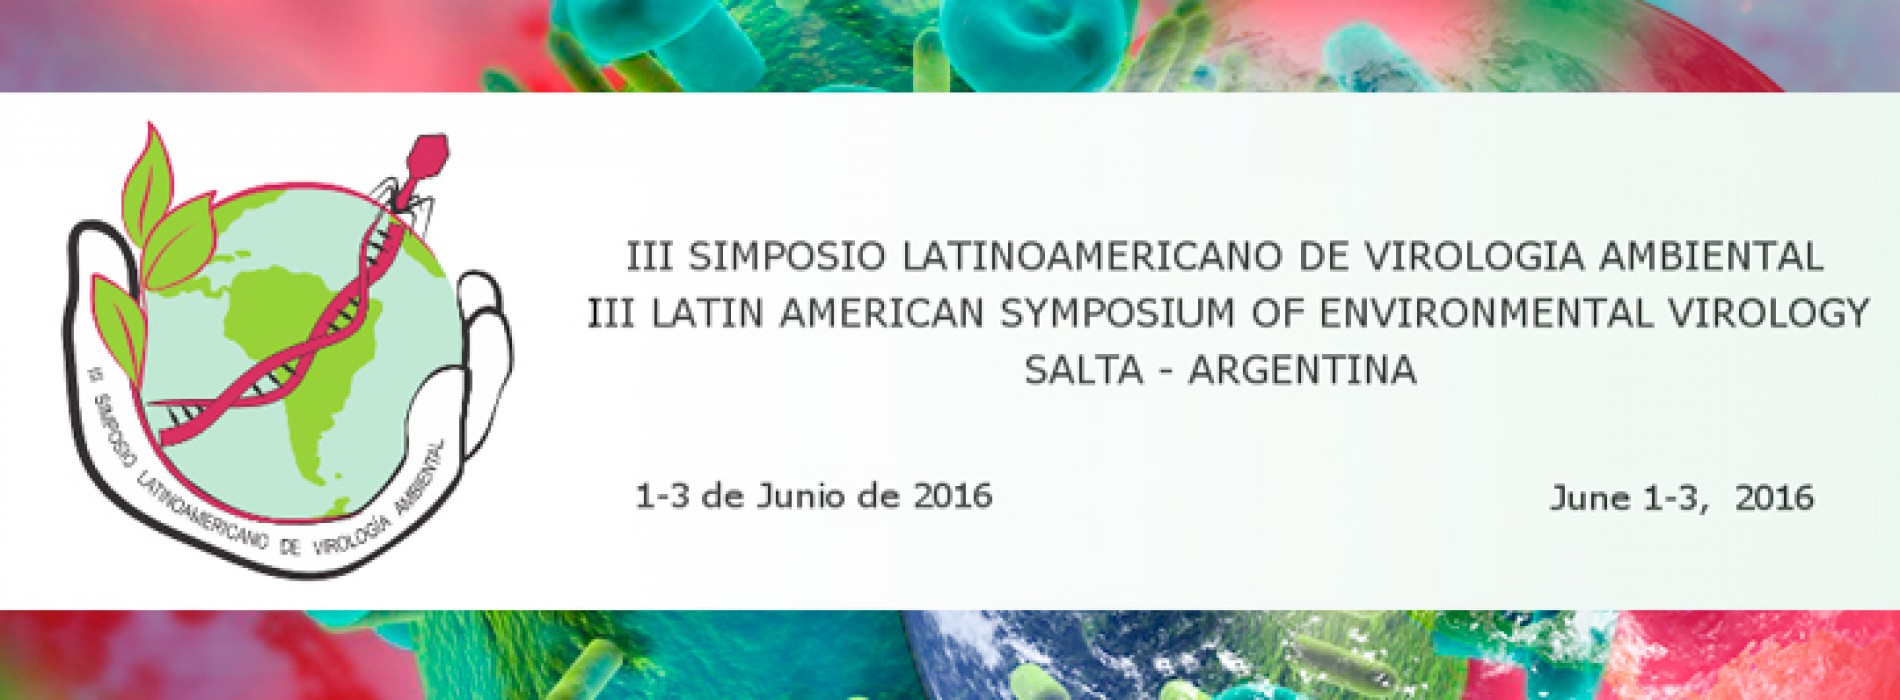 III Simposio Latinoamericano de Virología ambiental